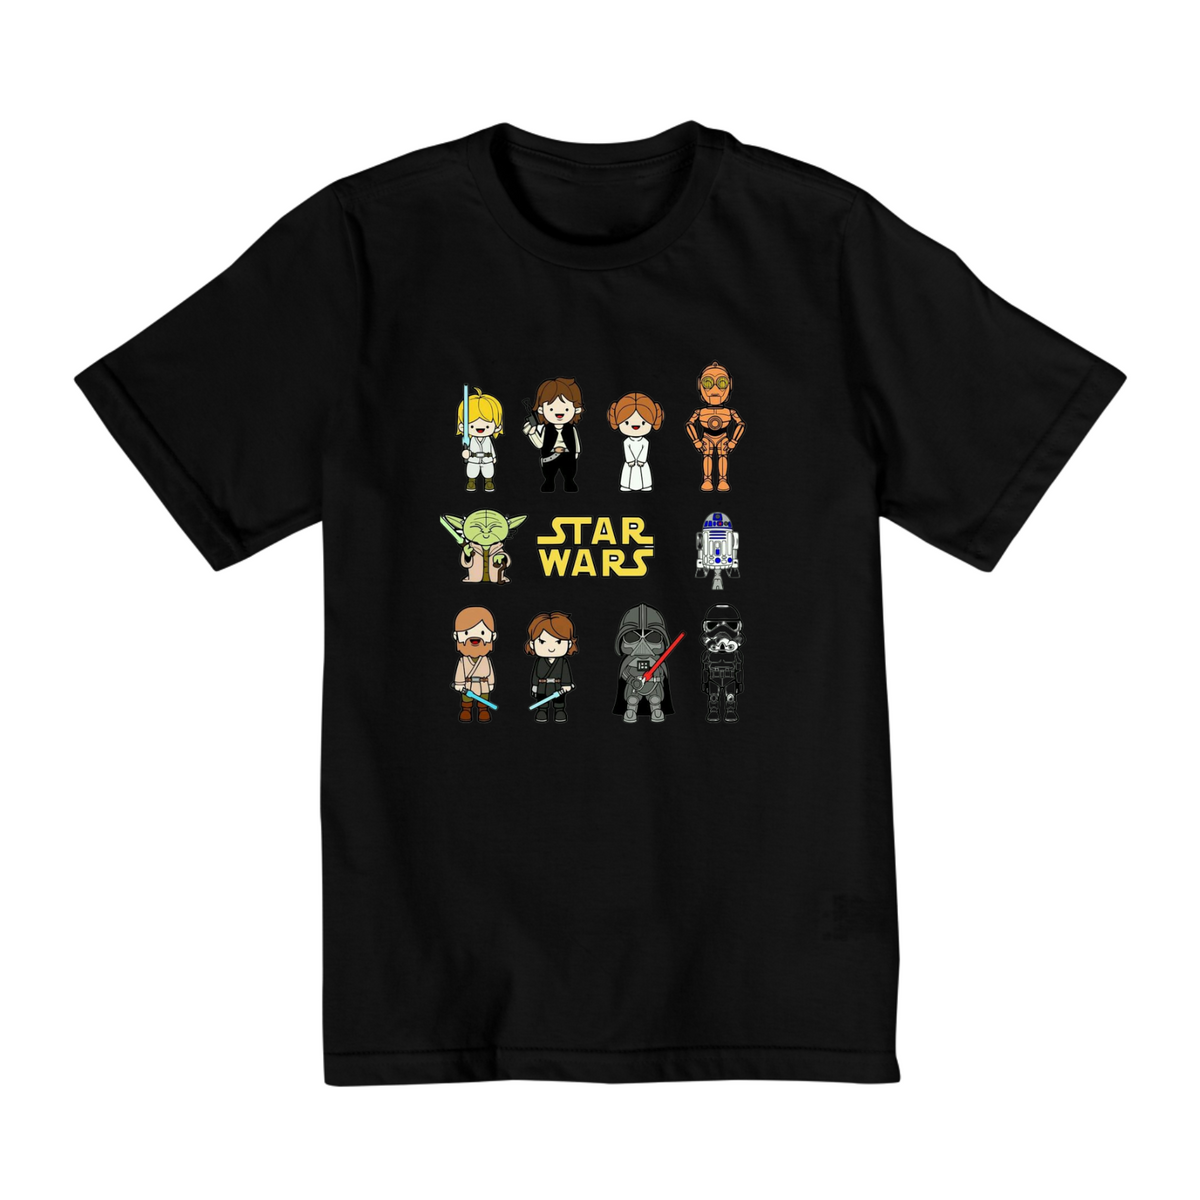 Nome do produto: Coleção Star Wars - Camiseta infantil 10 a 14 anos - Personagens